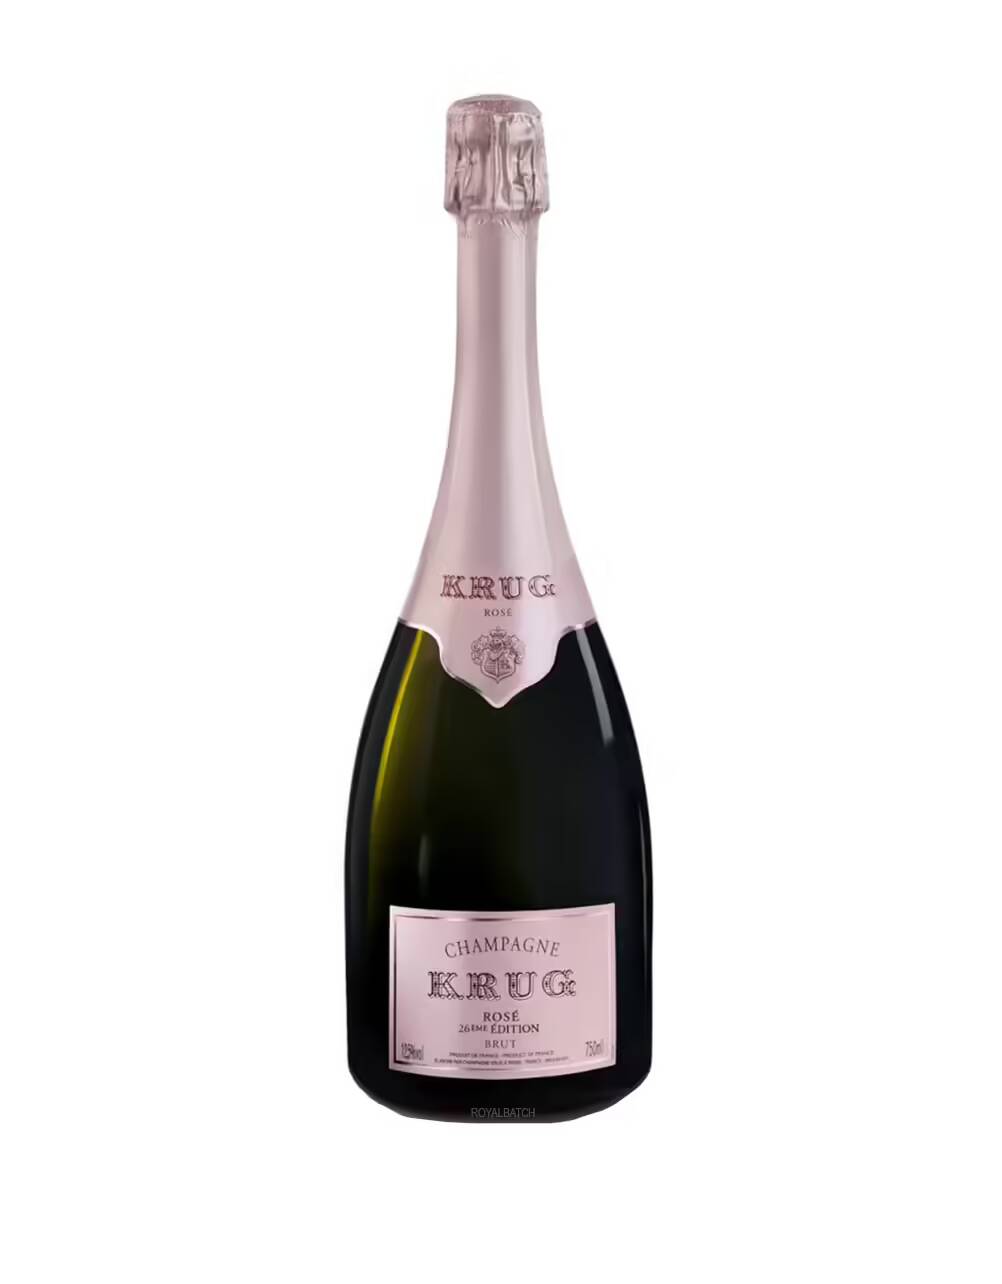 Krug Rose 26eme edition Brut Champagne